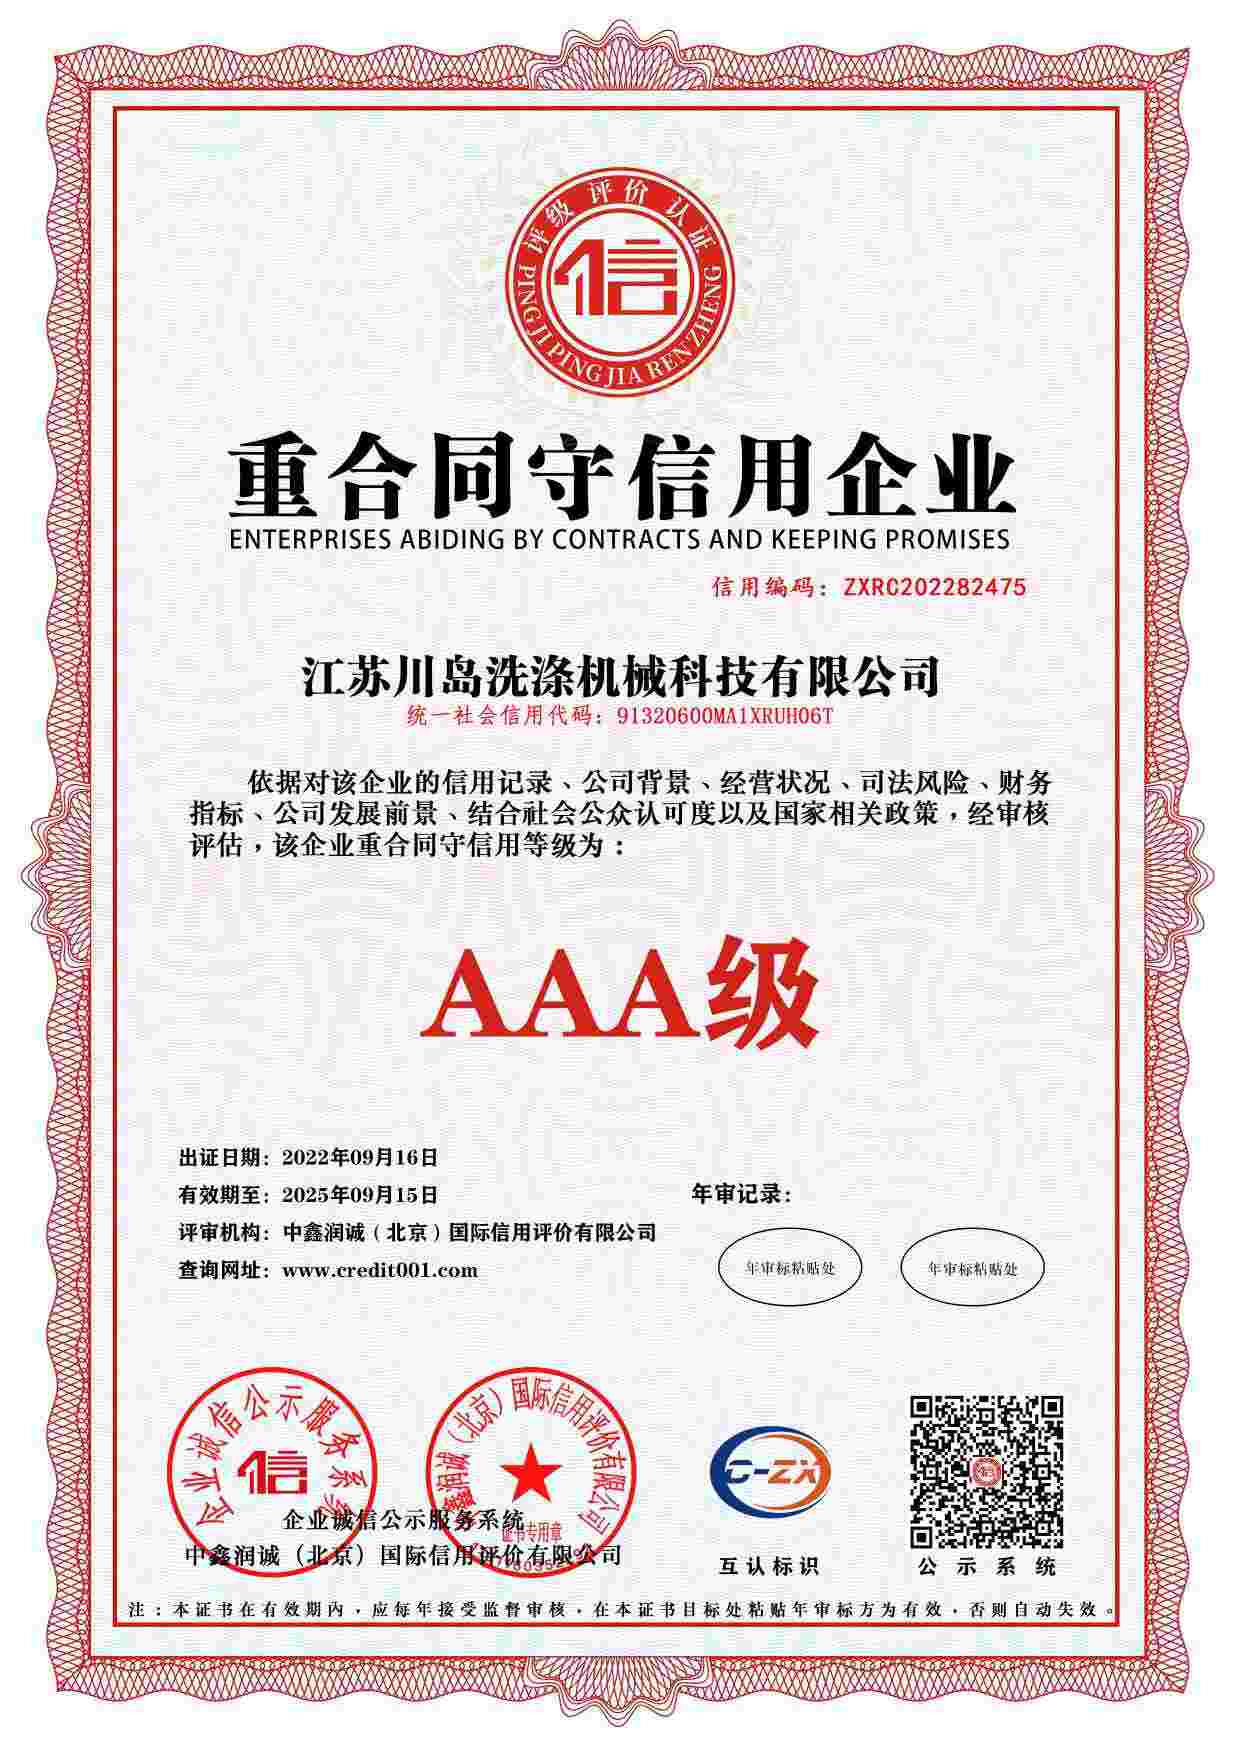 Enterprise credit rating certificate (3)